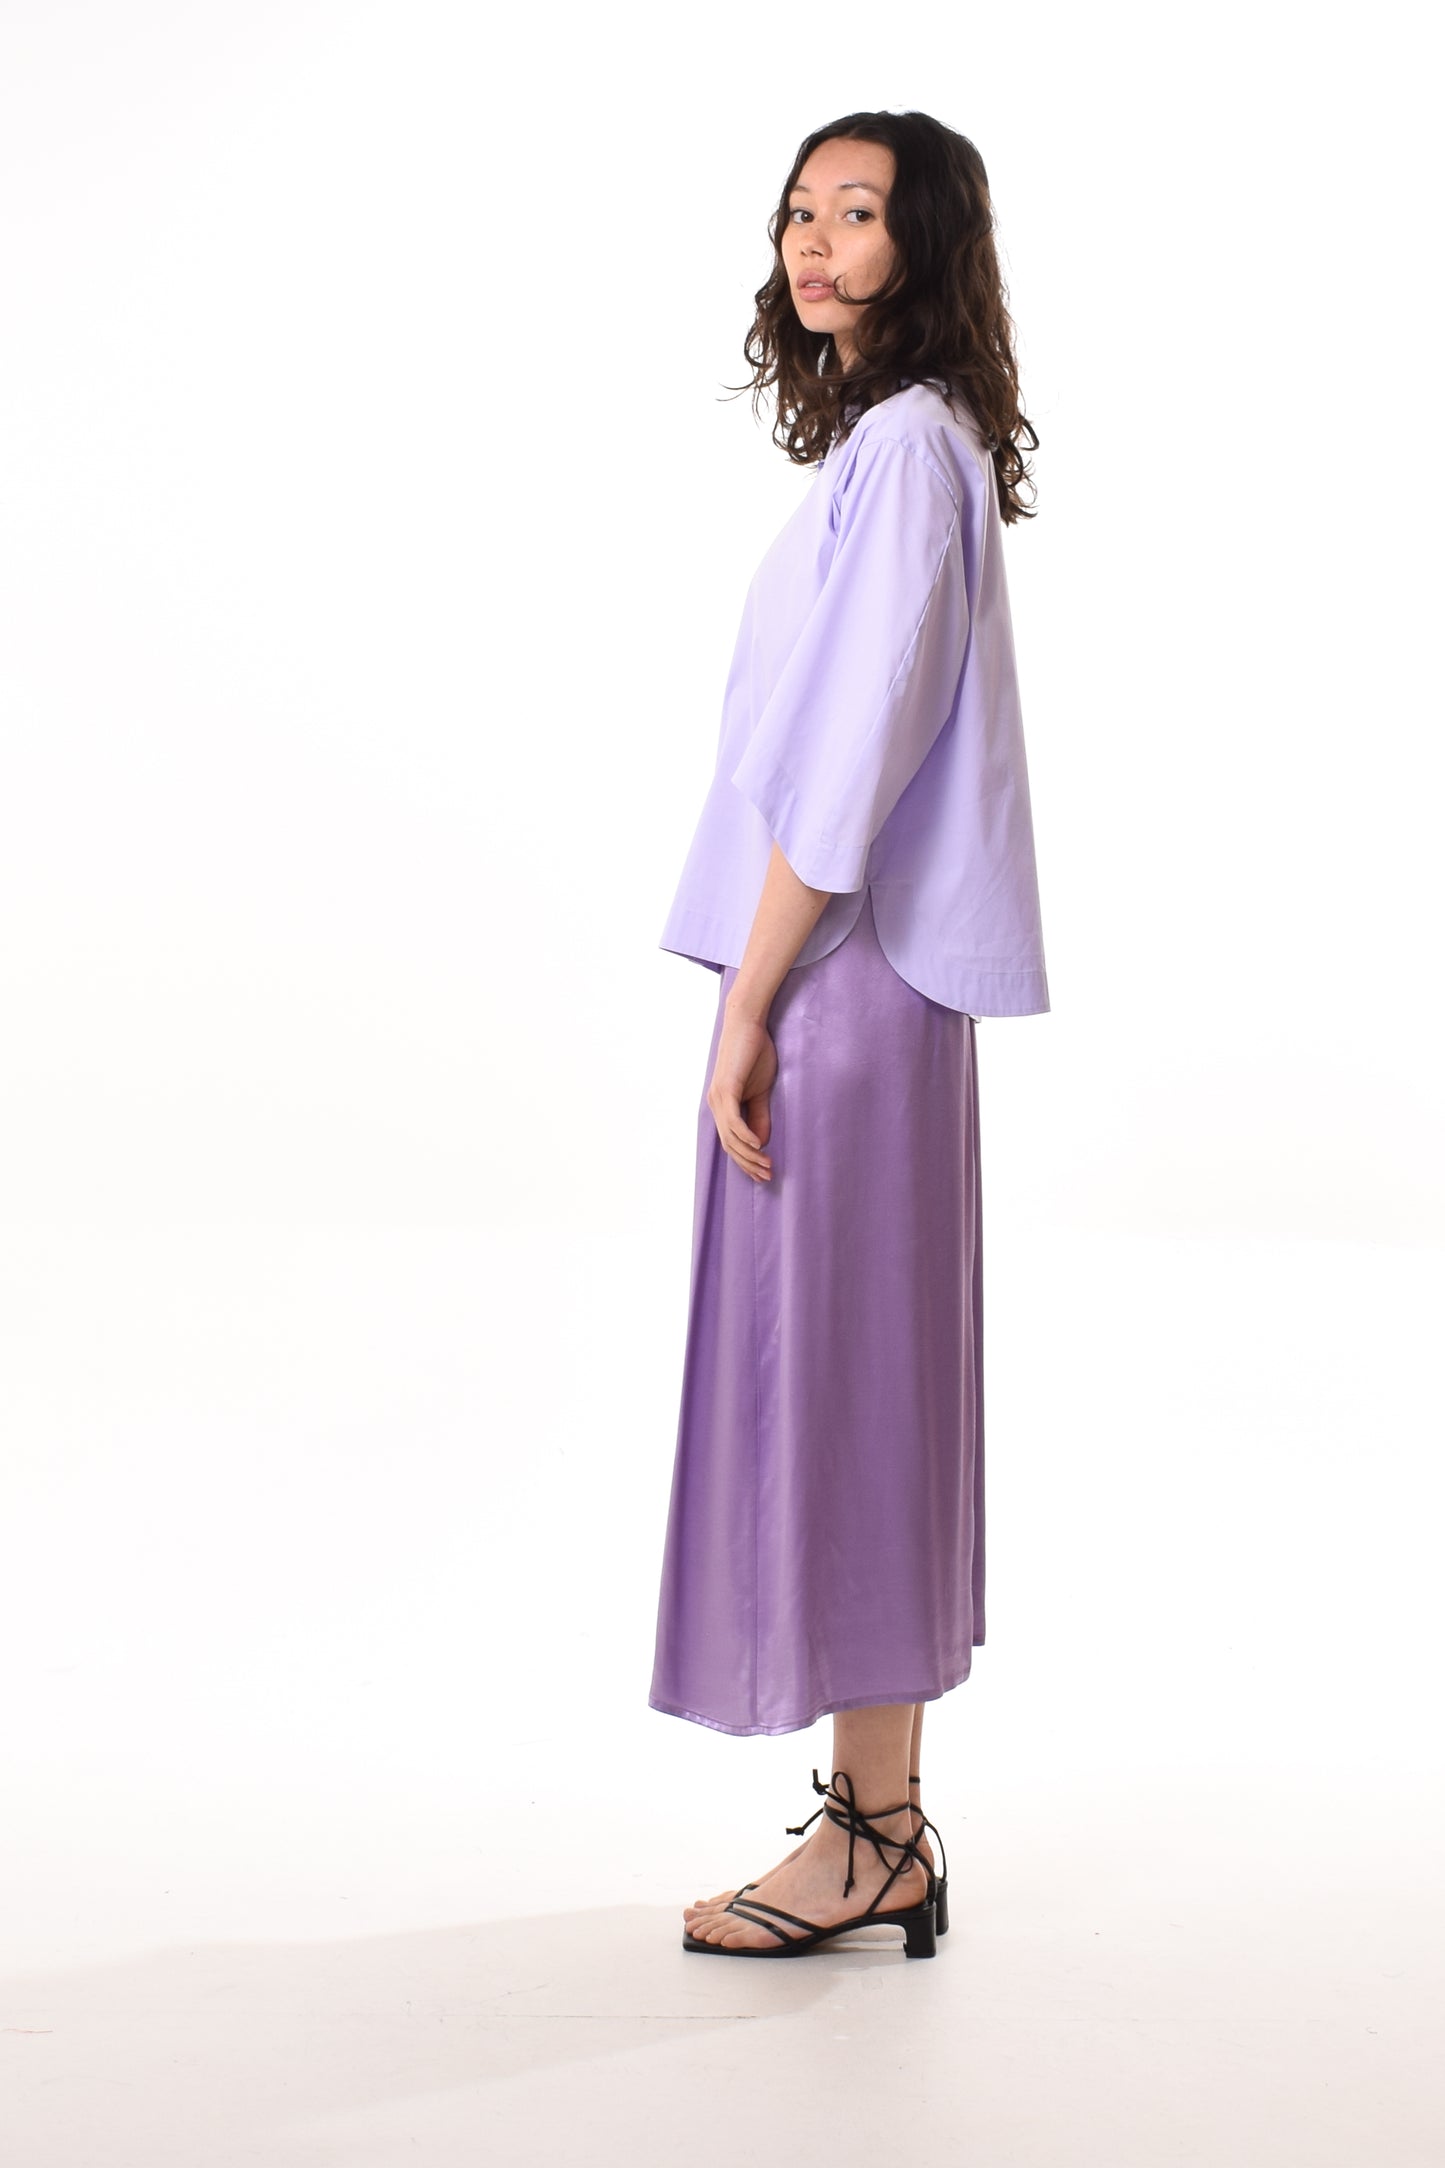 Alyza blouse in Light Purple